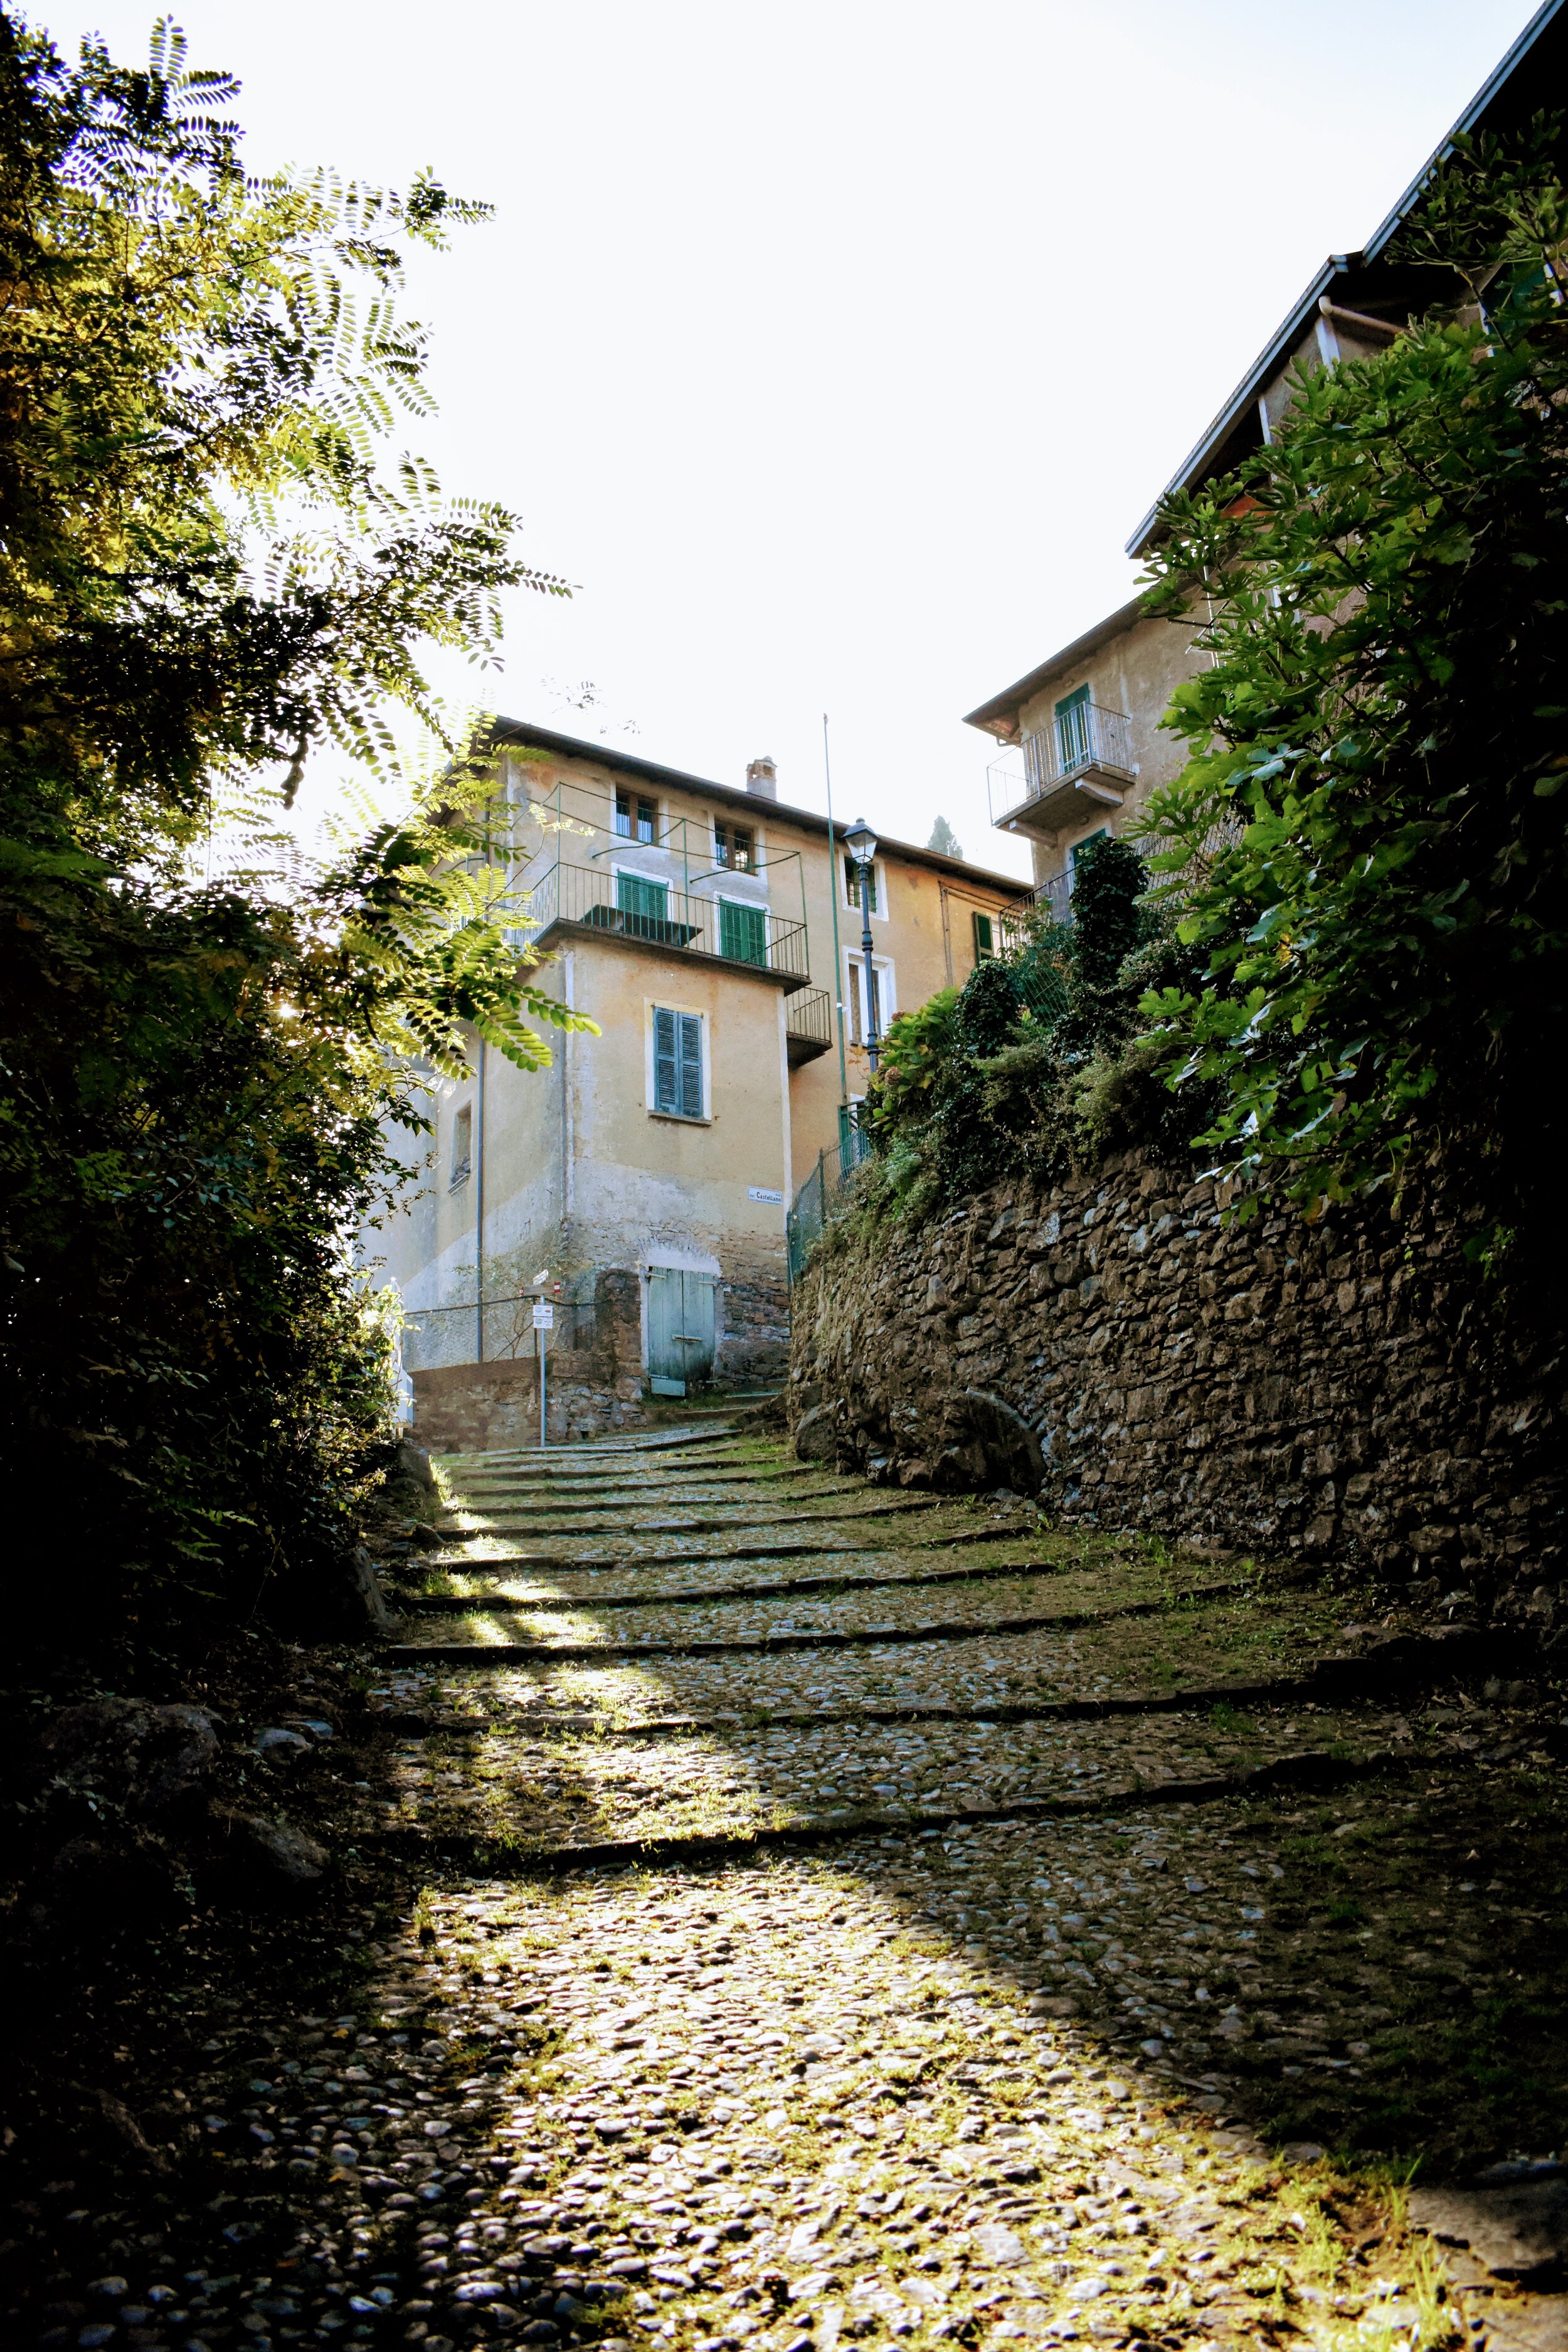 Walk up to Castello di Vezio